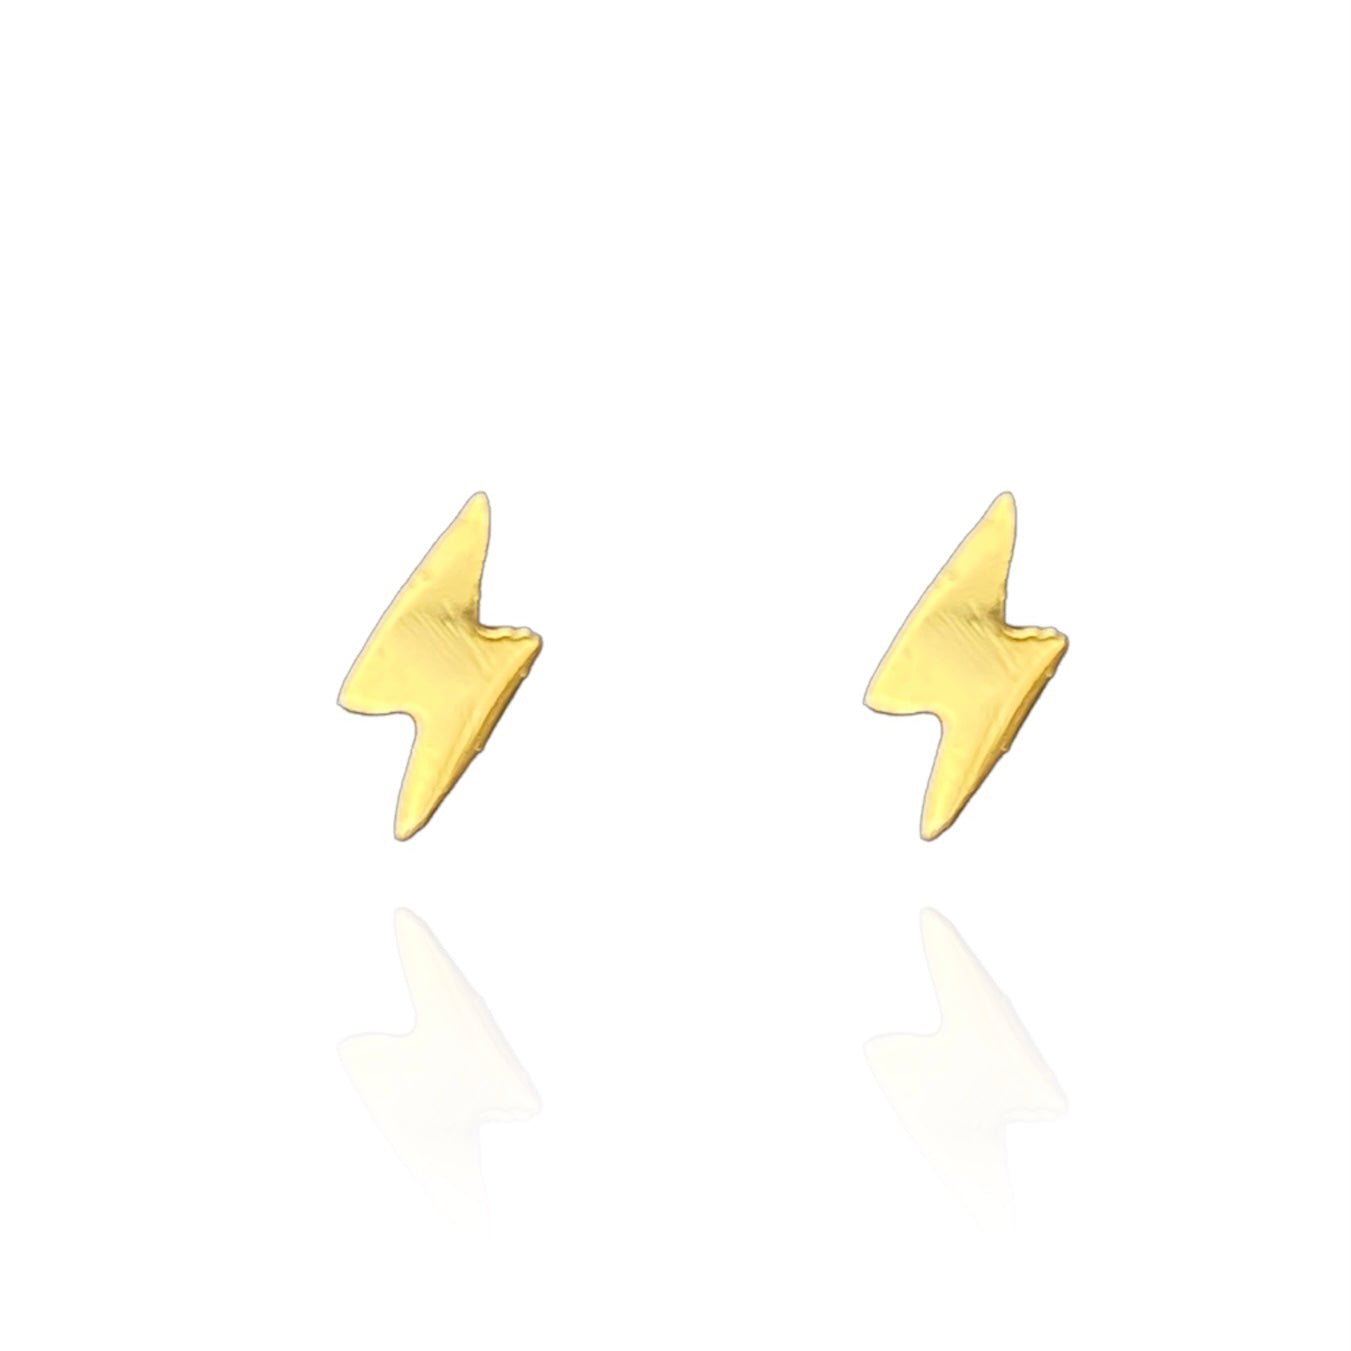 Lightning Bolt Earring Studs Gold